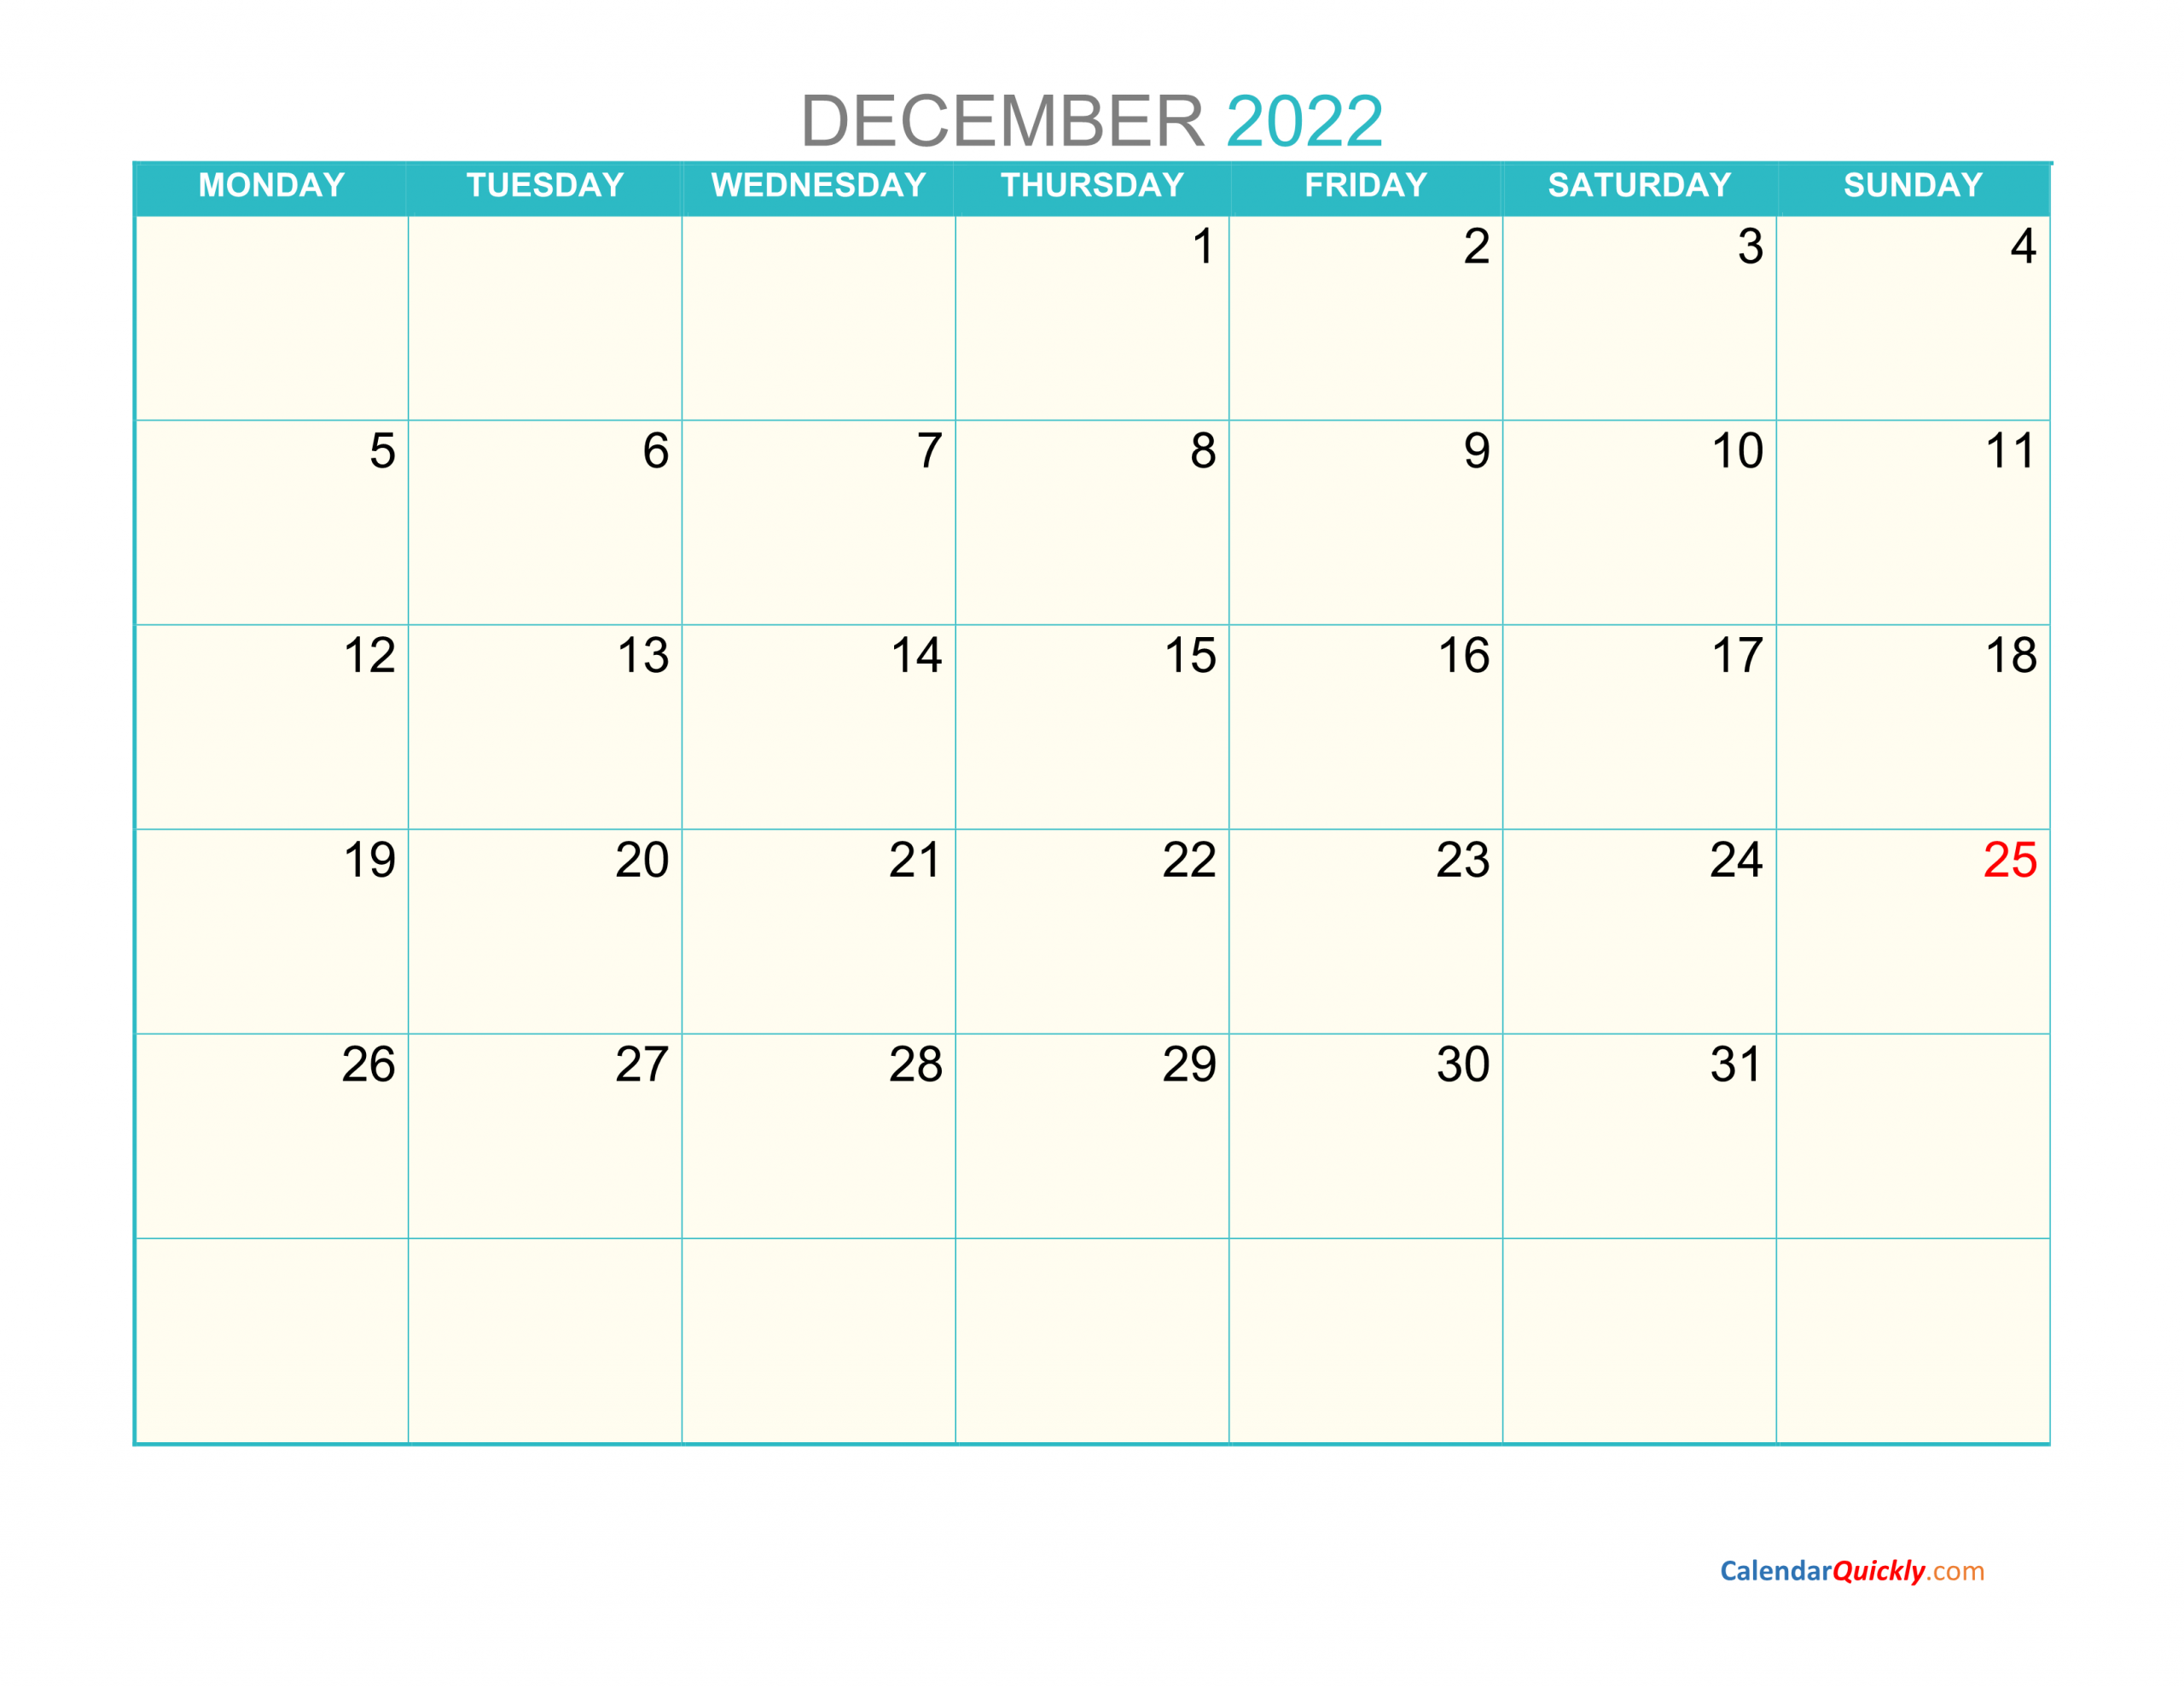 December Monday 2022 Calendar Printable | Calendar Quickly